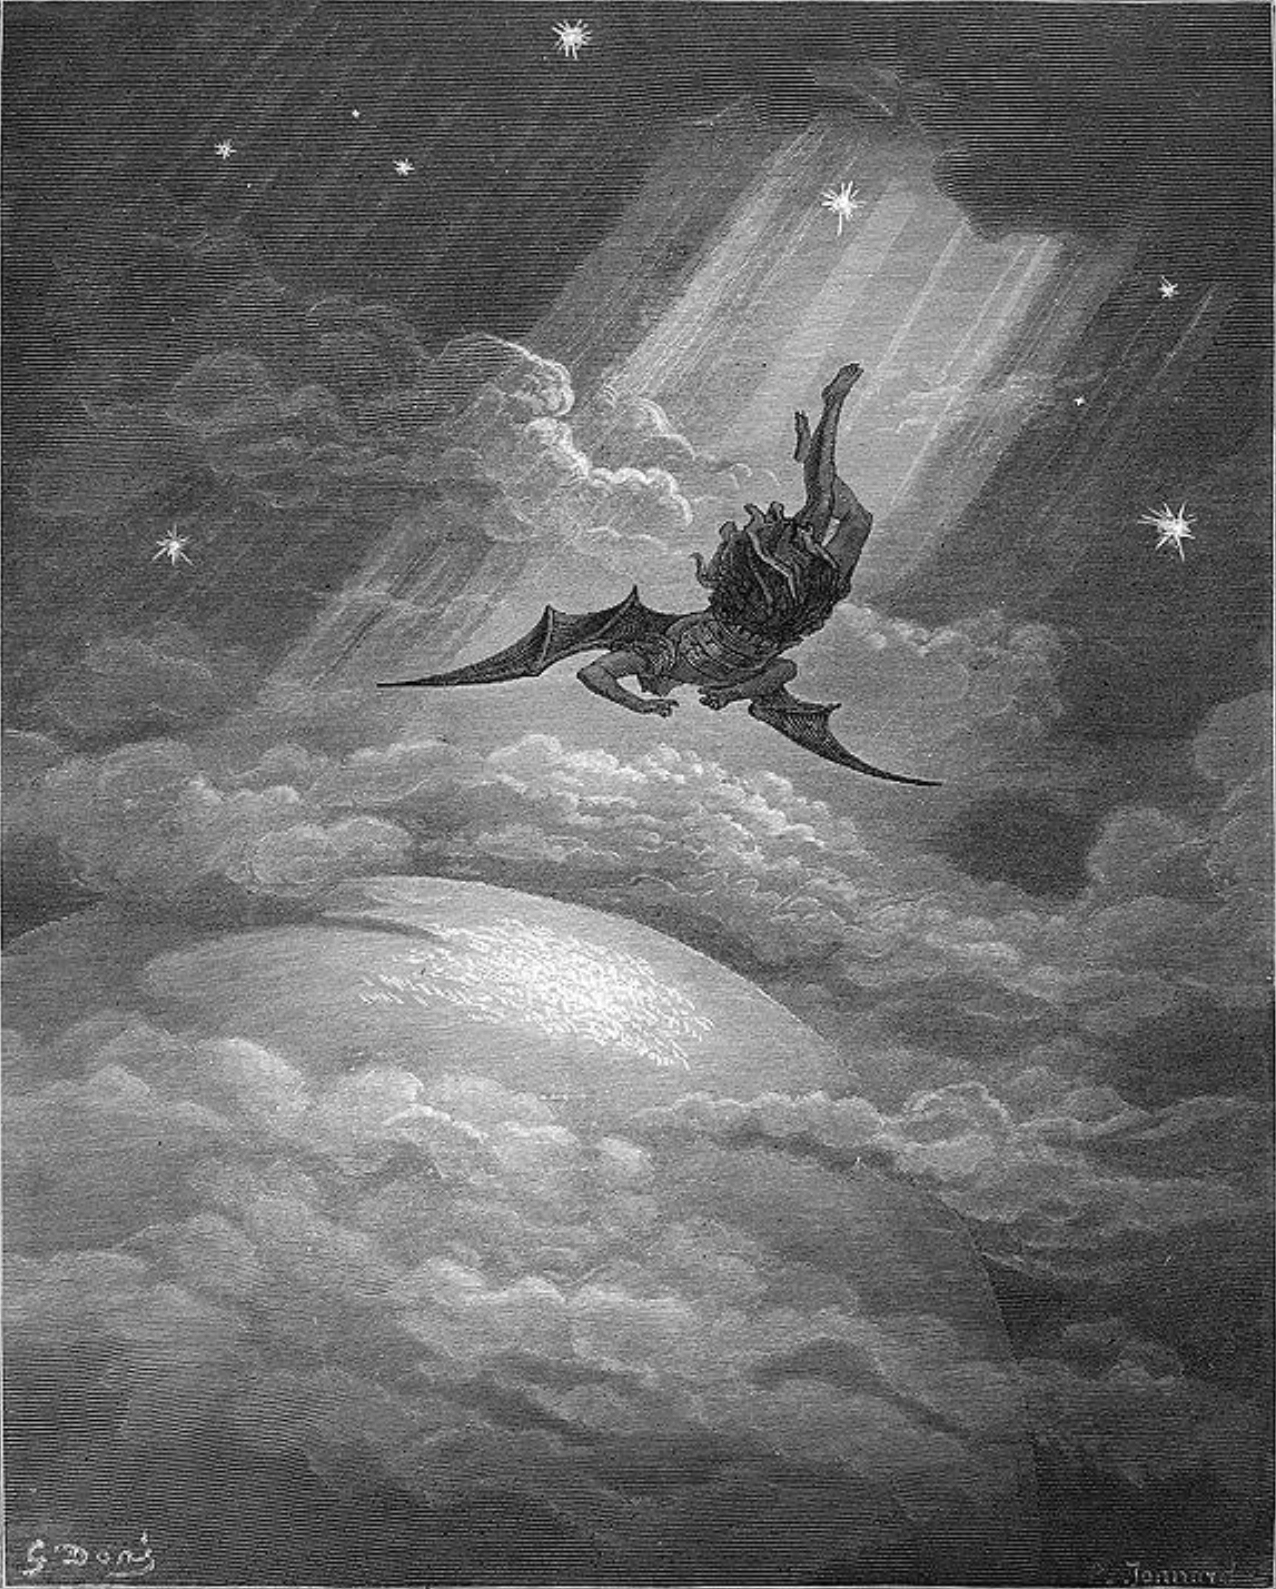 Milton's Paradise Lost: Gustave Doré Retro Restored Edition